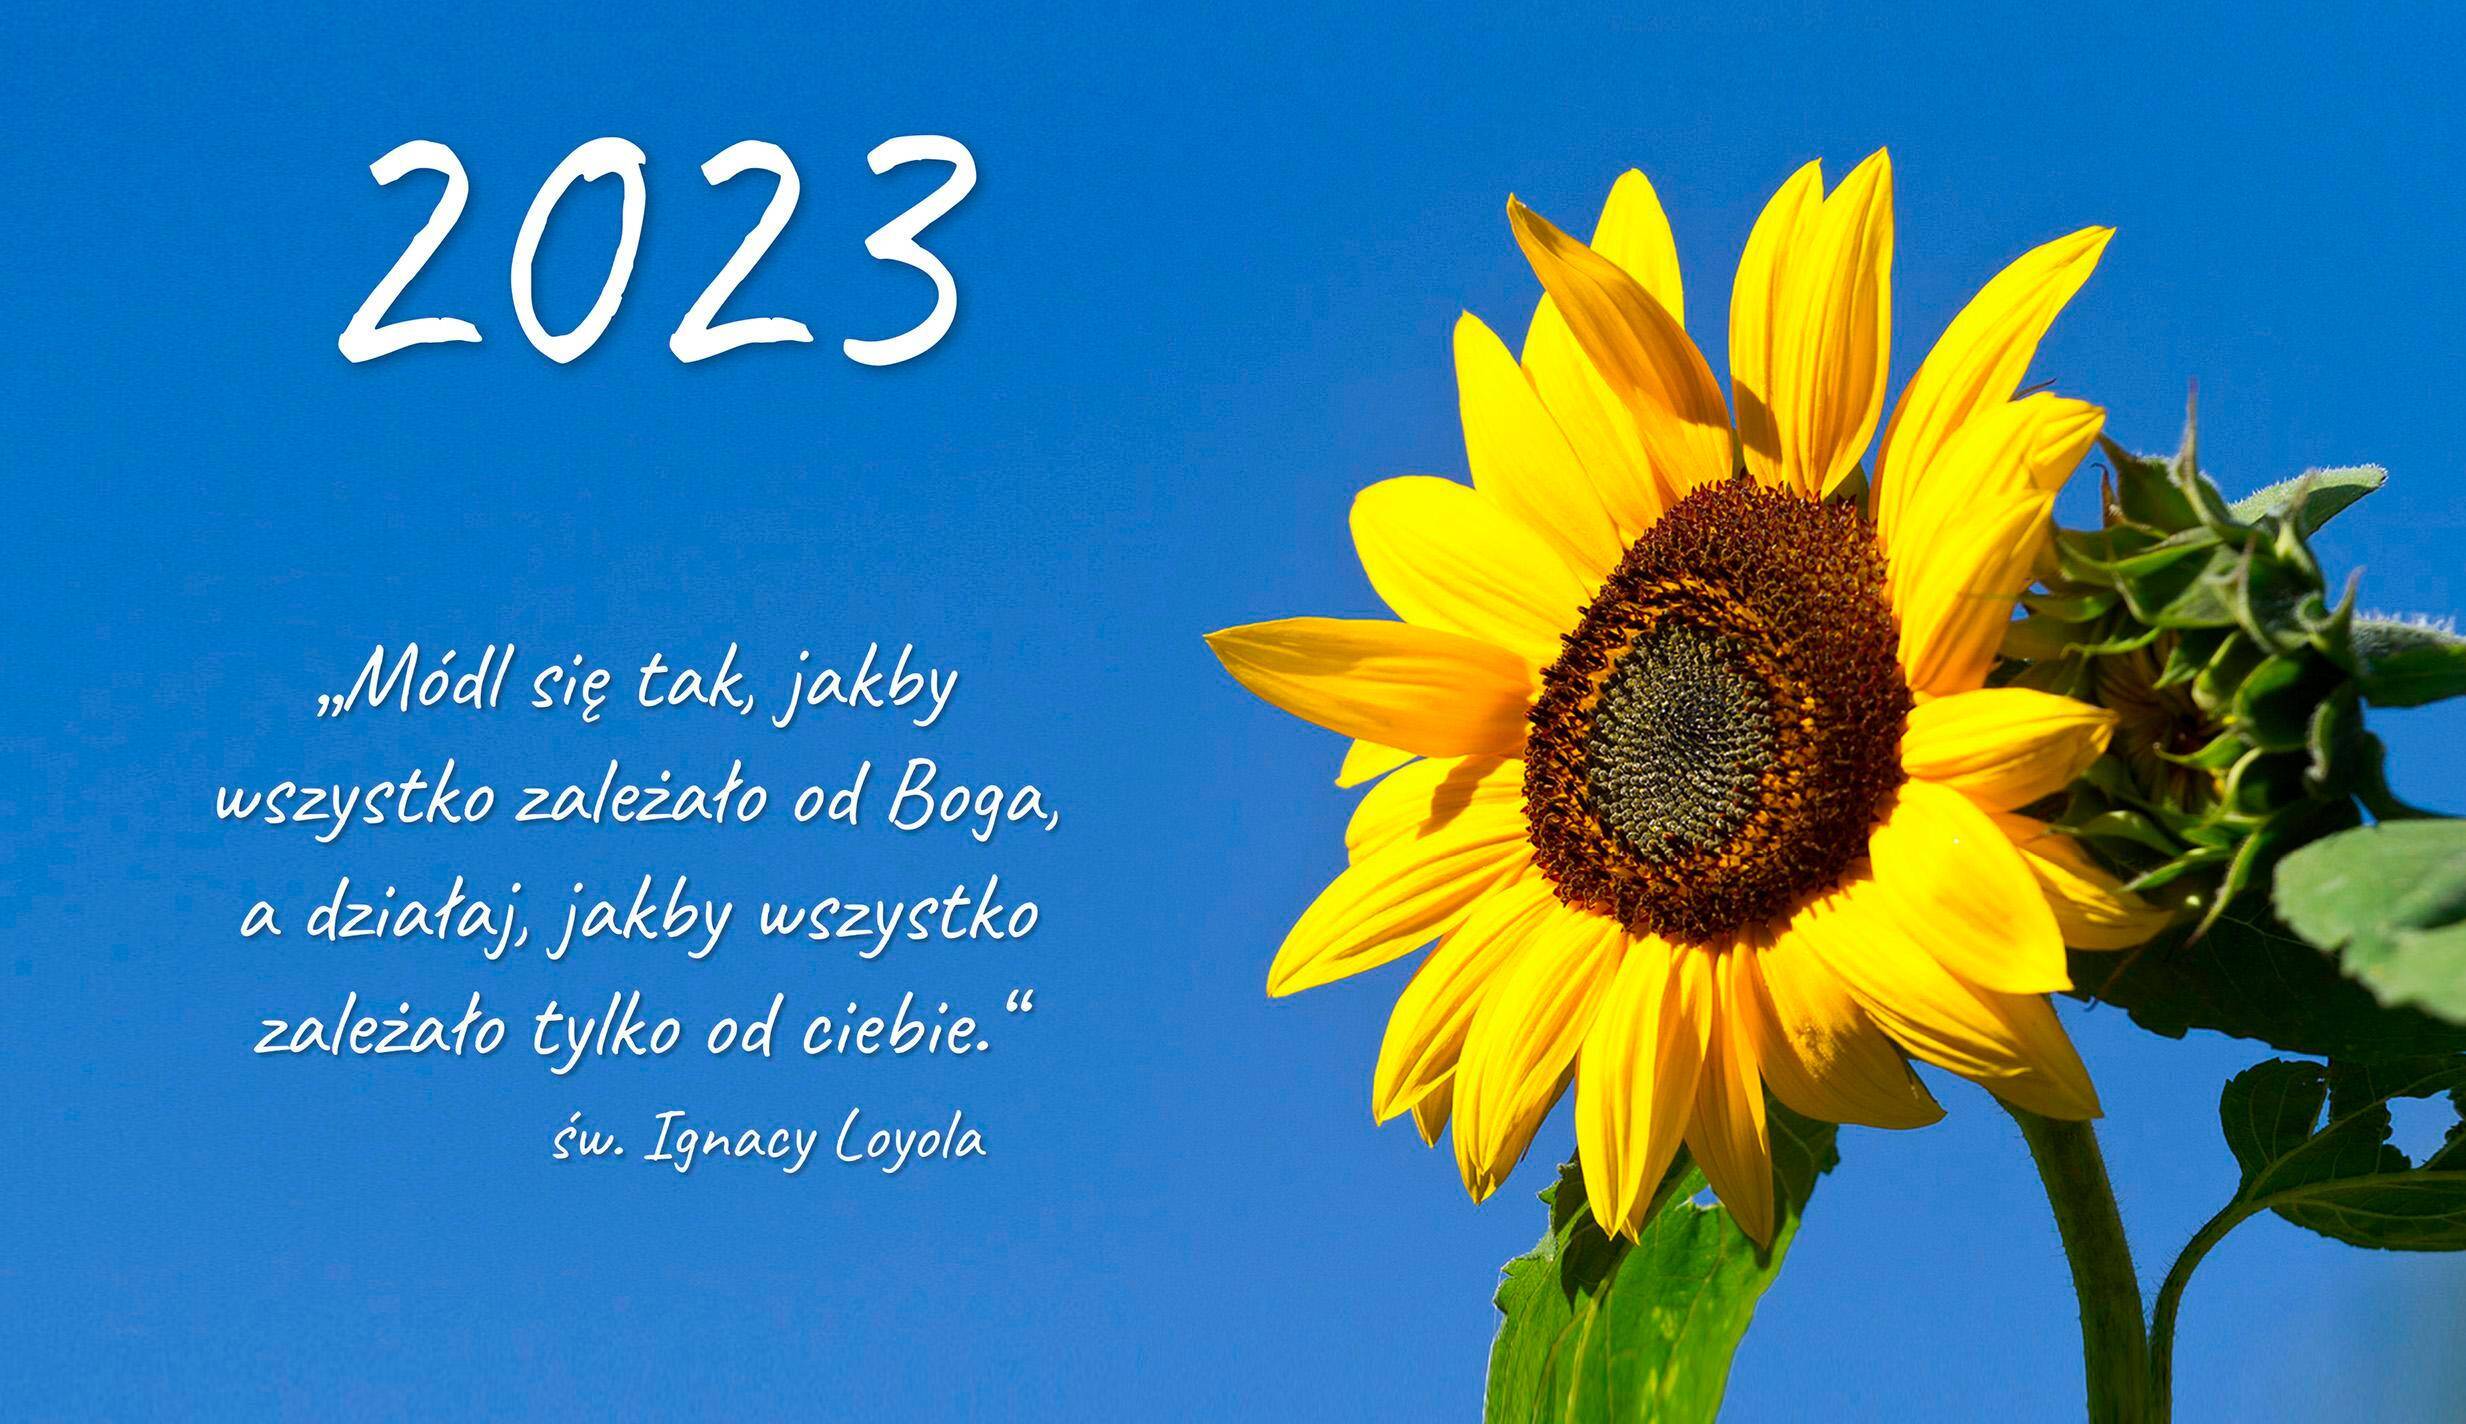 2023 kalendarz trójdzielny - Słonecznik (Zdjęcie 1)